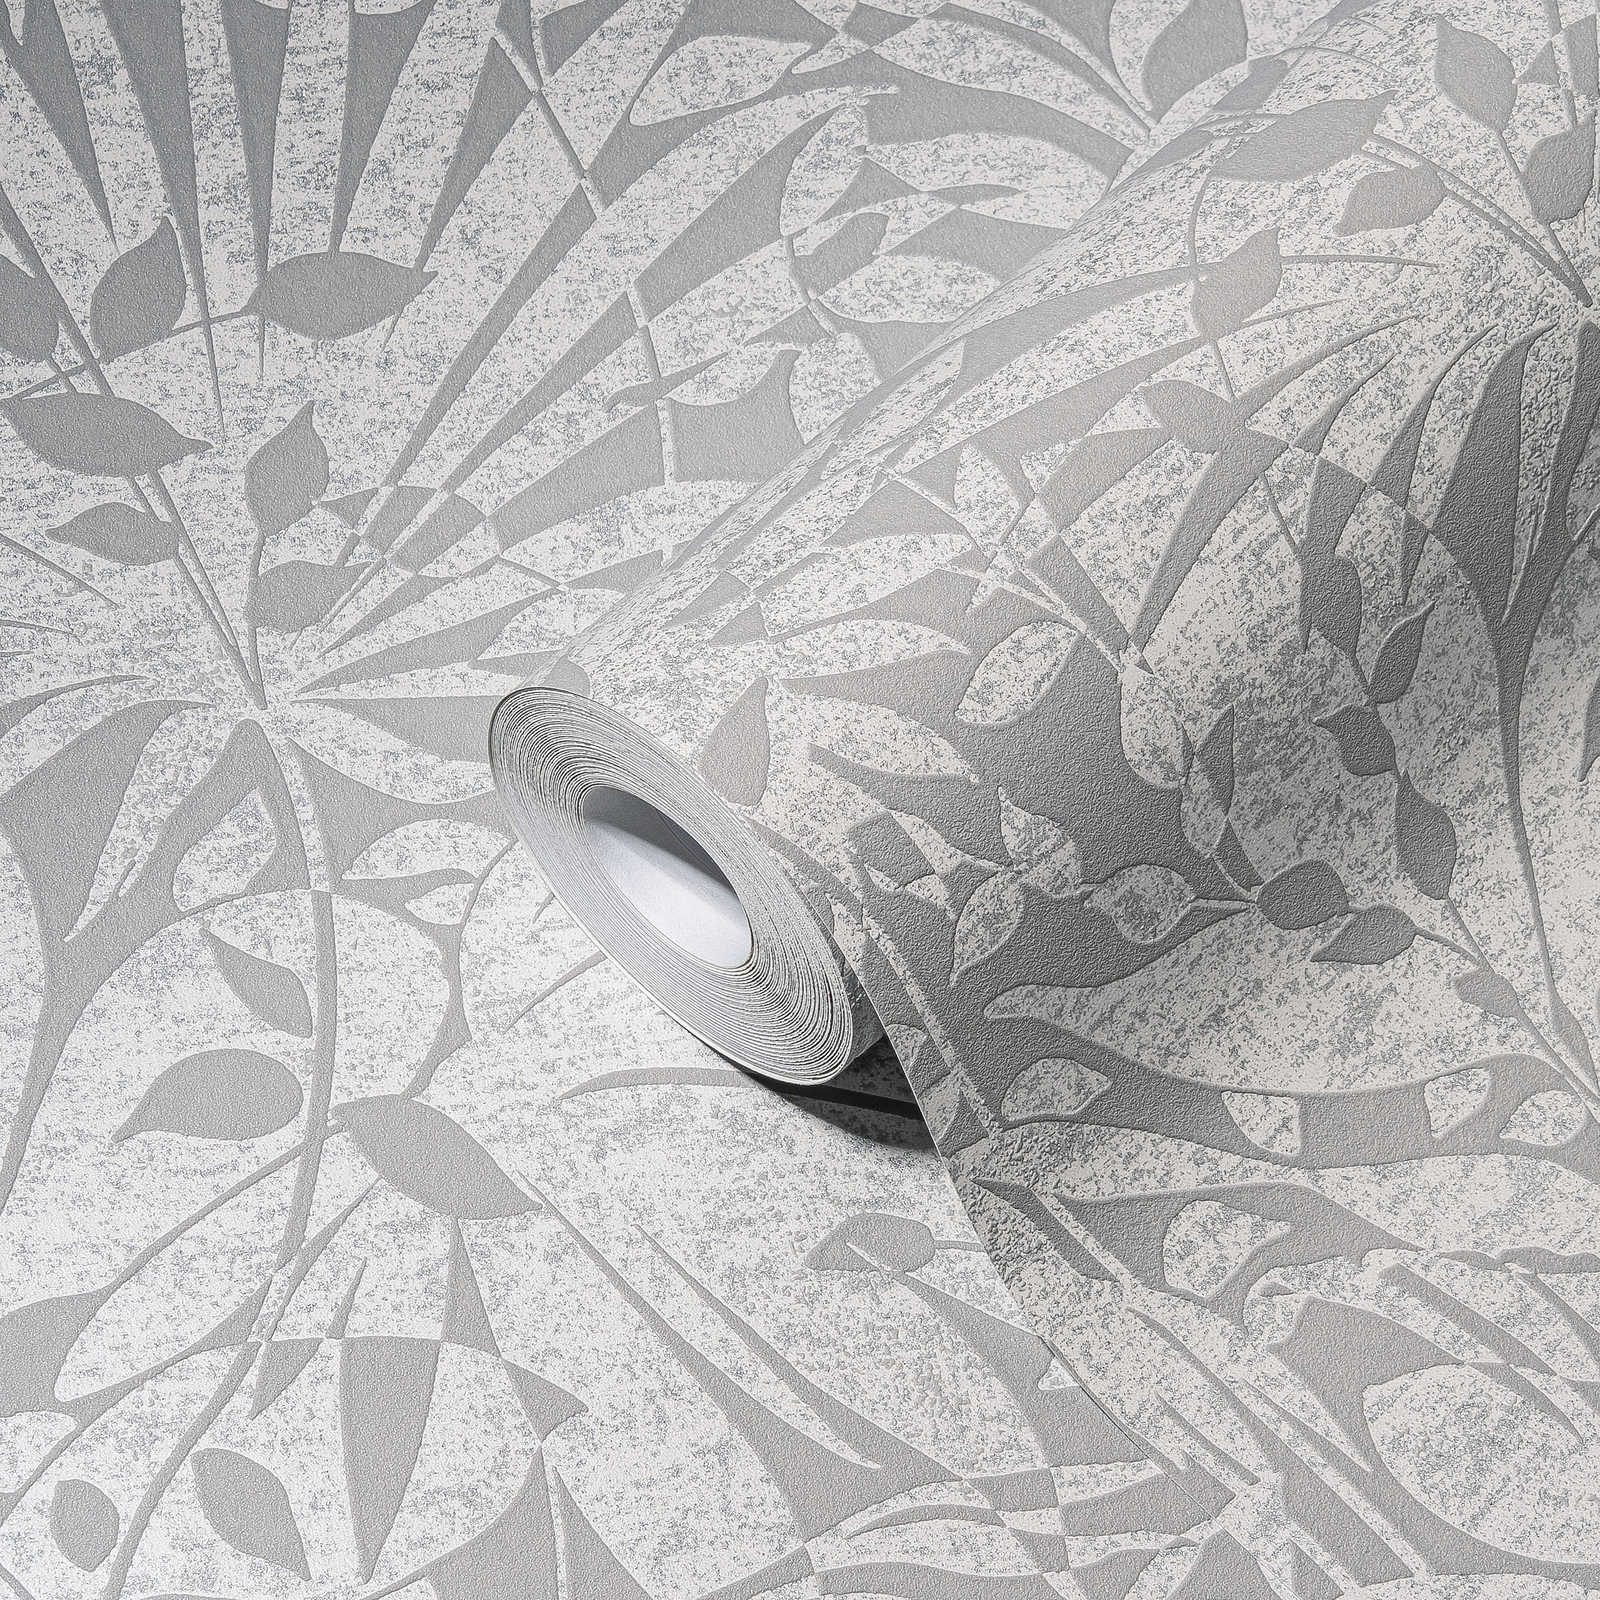             Papier peint gris à feuilles avec détails structurés et effet métallique
        